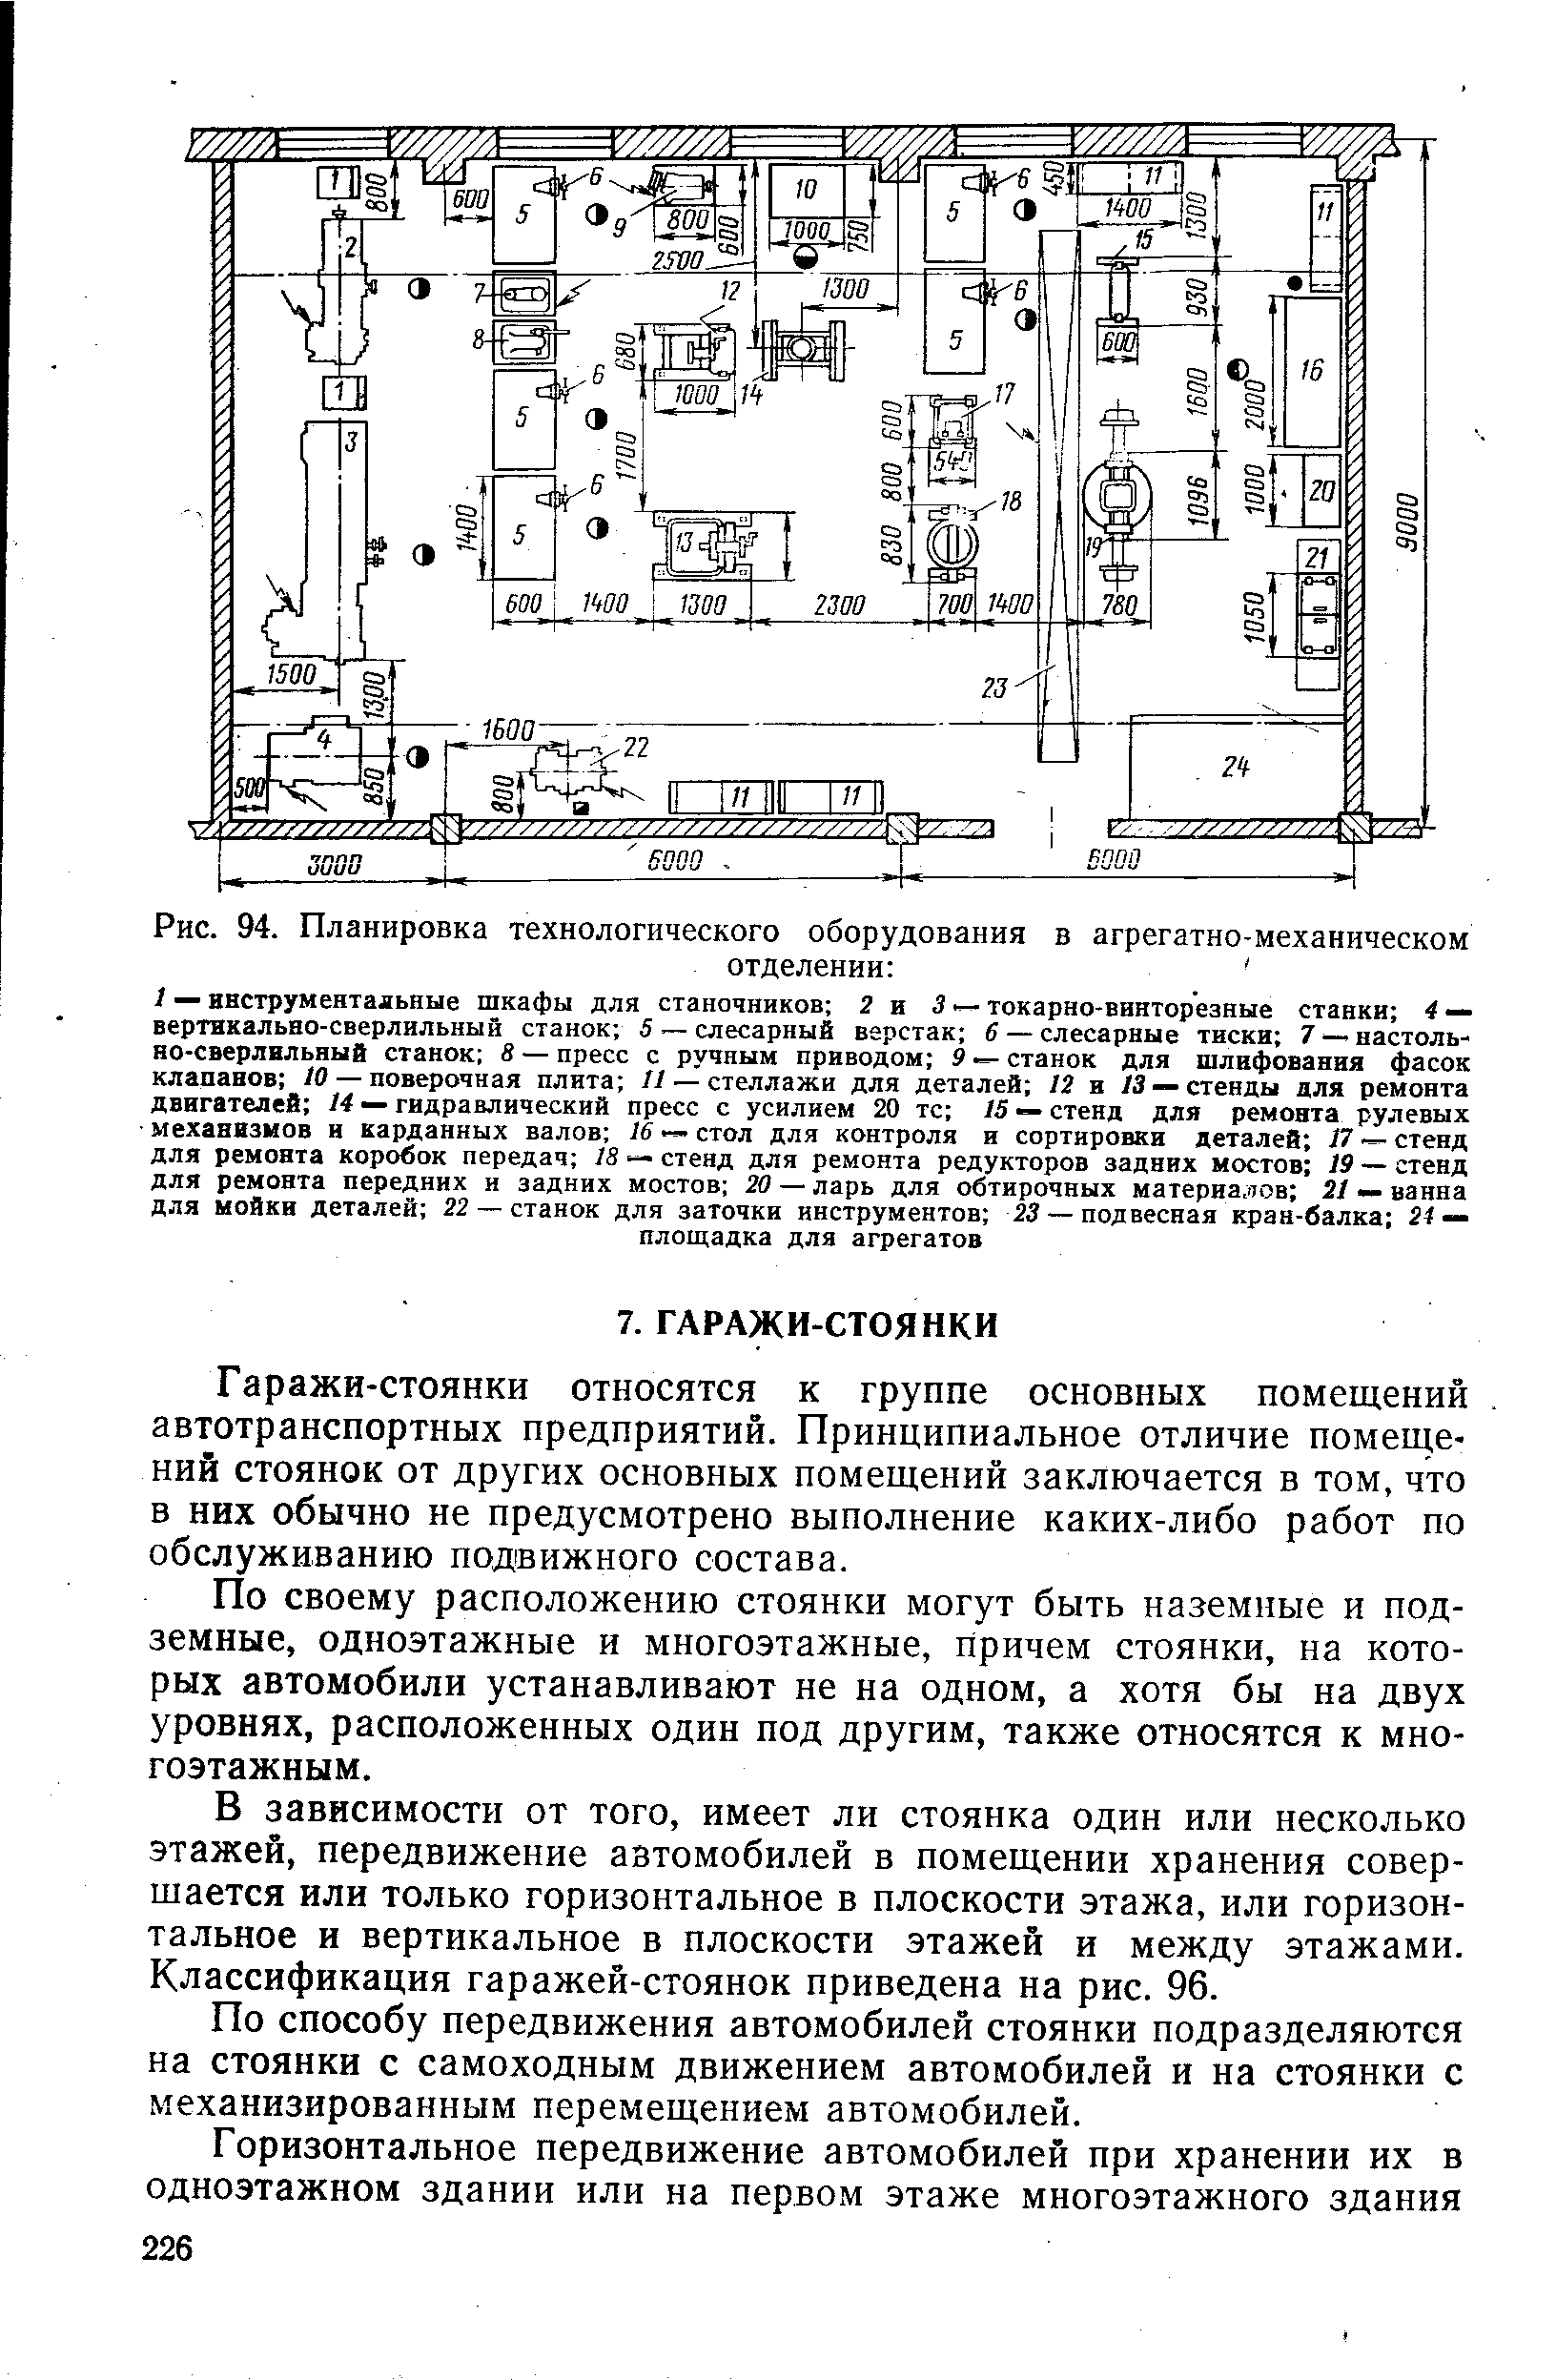 Рис. 94. Планировка технологического оборудования в агрегатно-механическом
